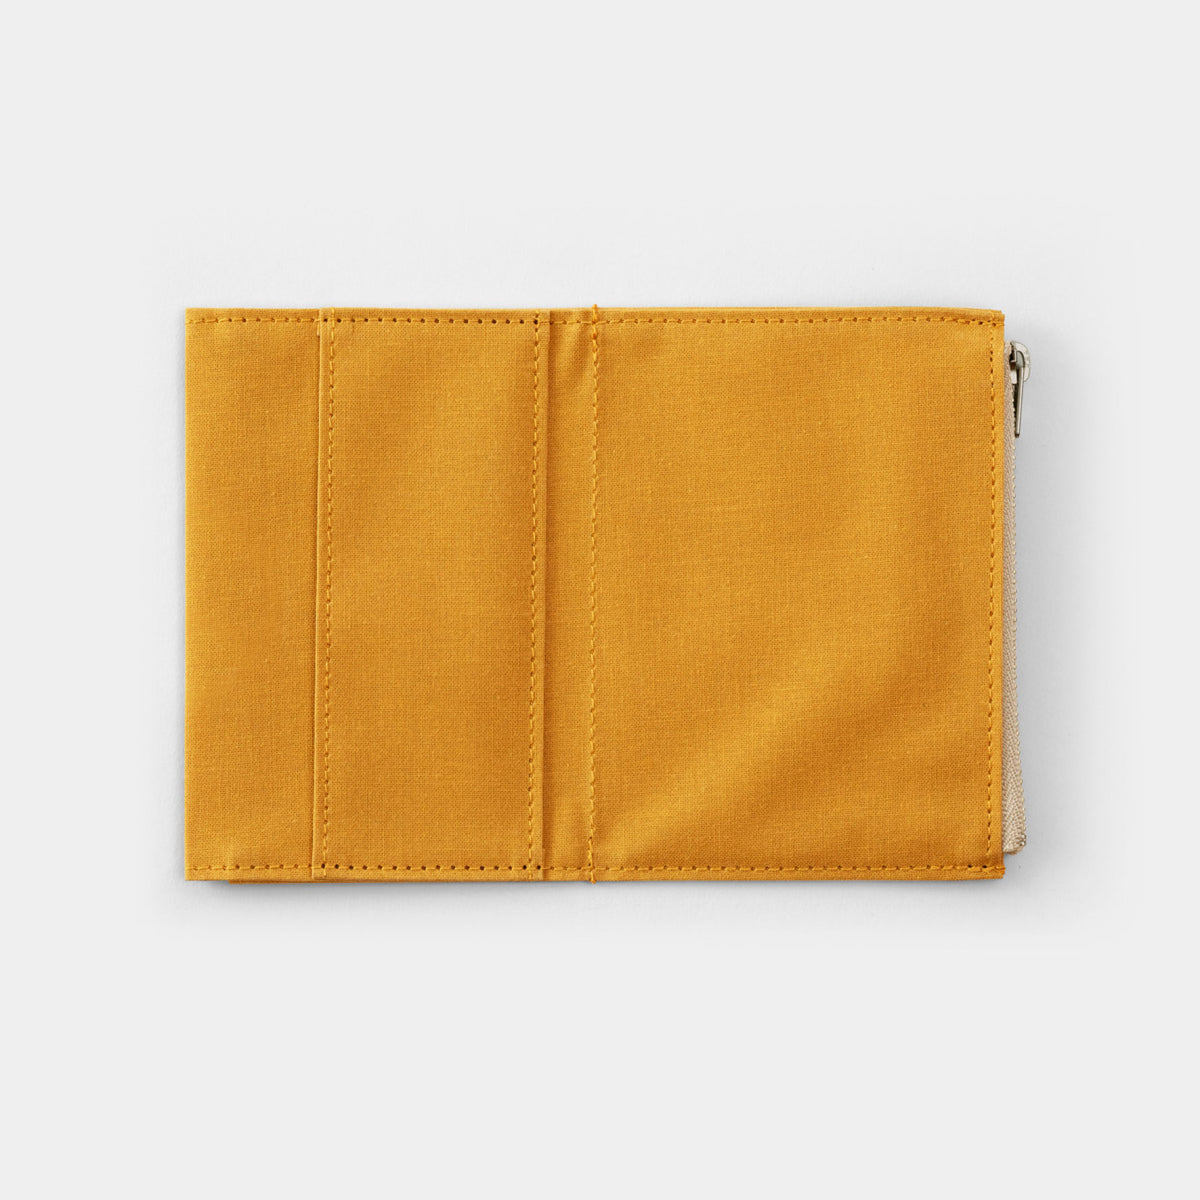 Traveler's Factory - Zipper Case - Passport - Mustard <Outgoing>